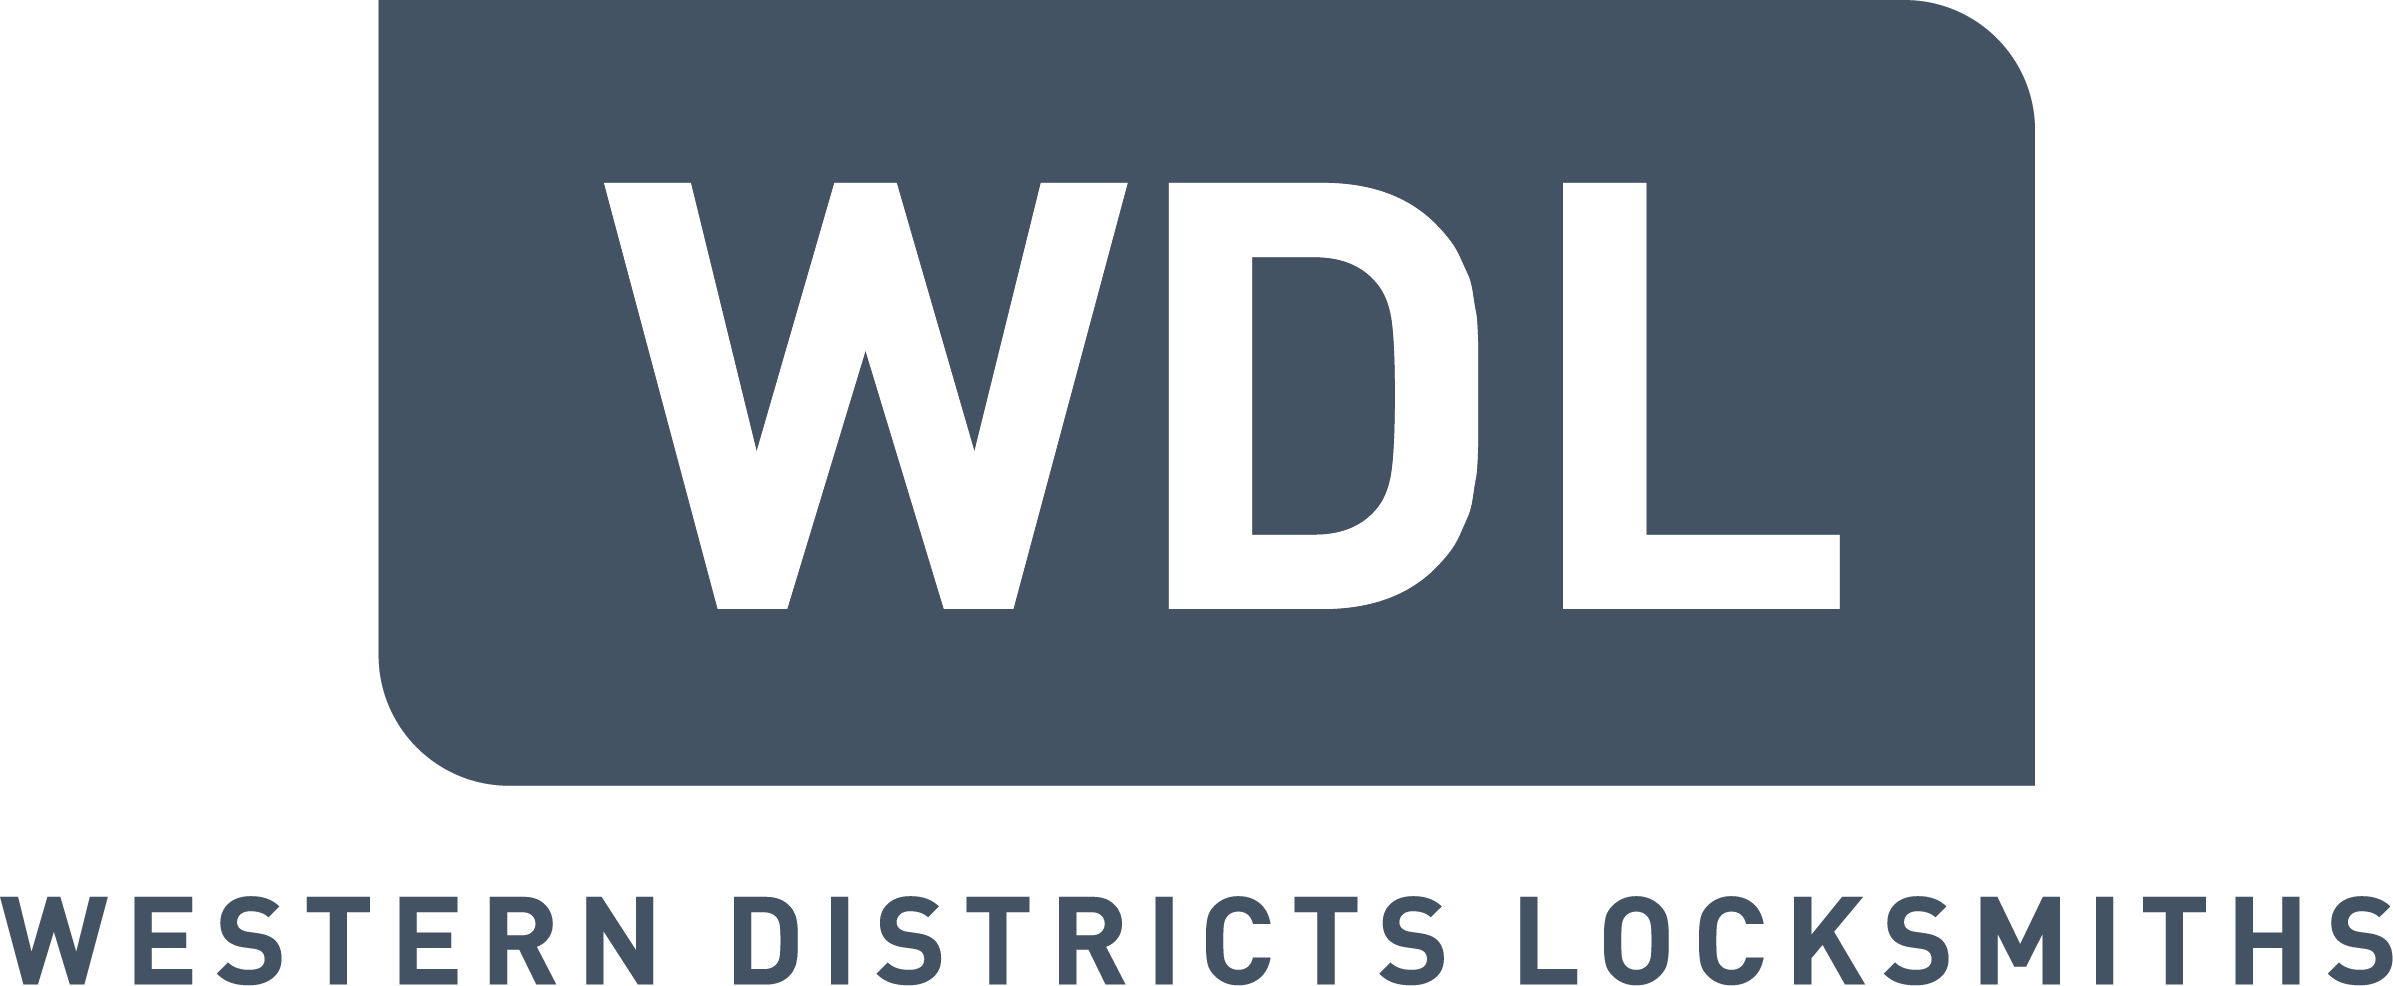 Brand-Western Districts Locksmiths (WDL)